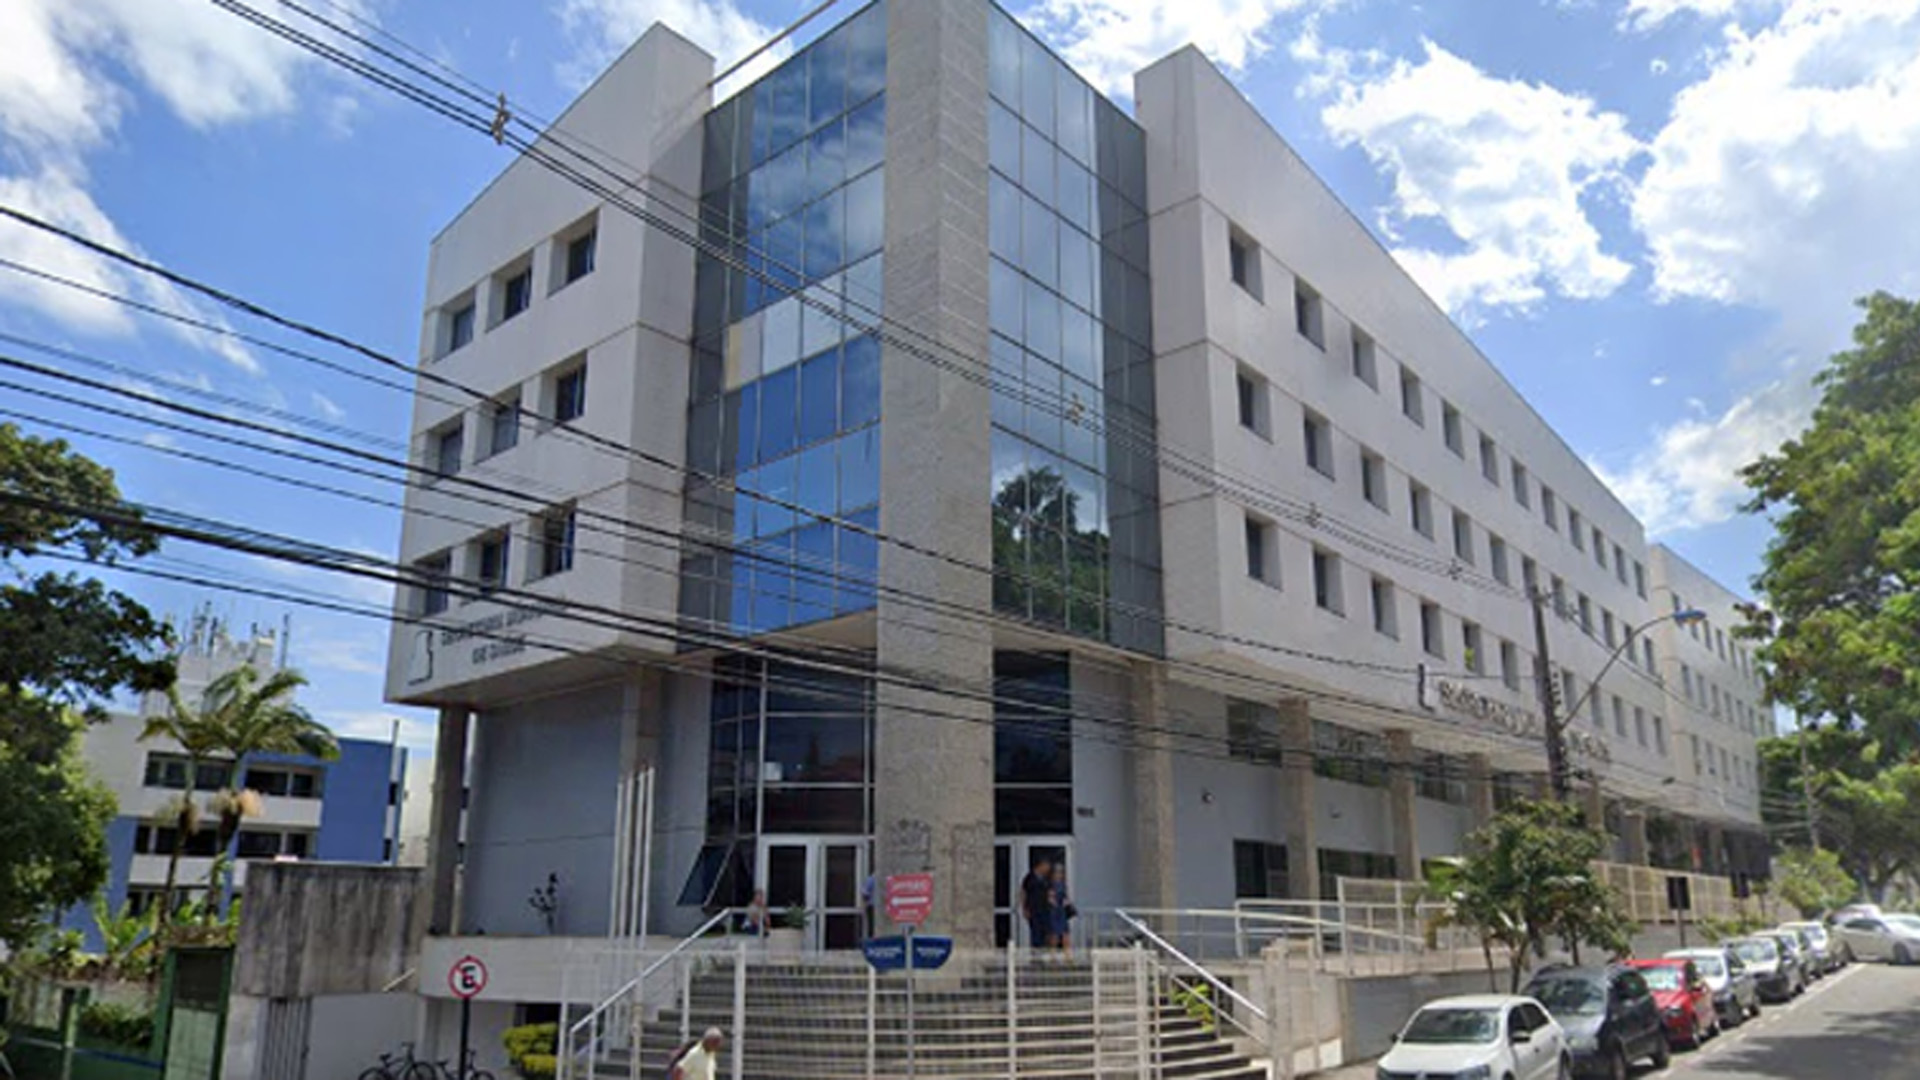 Prefeitura Municipal de Vila Velha: ​Educação: inscrições abertas